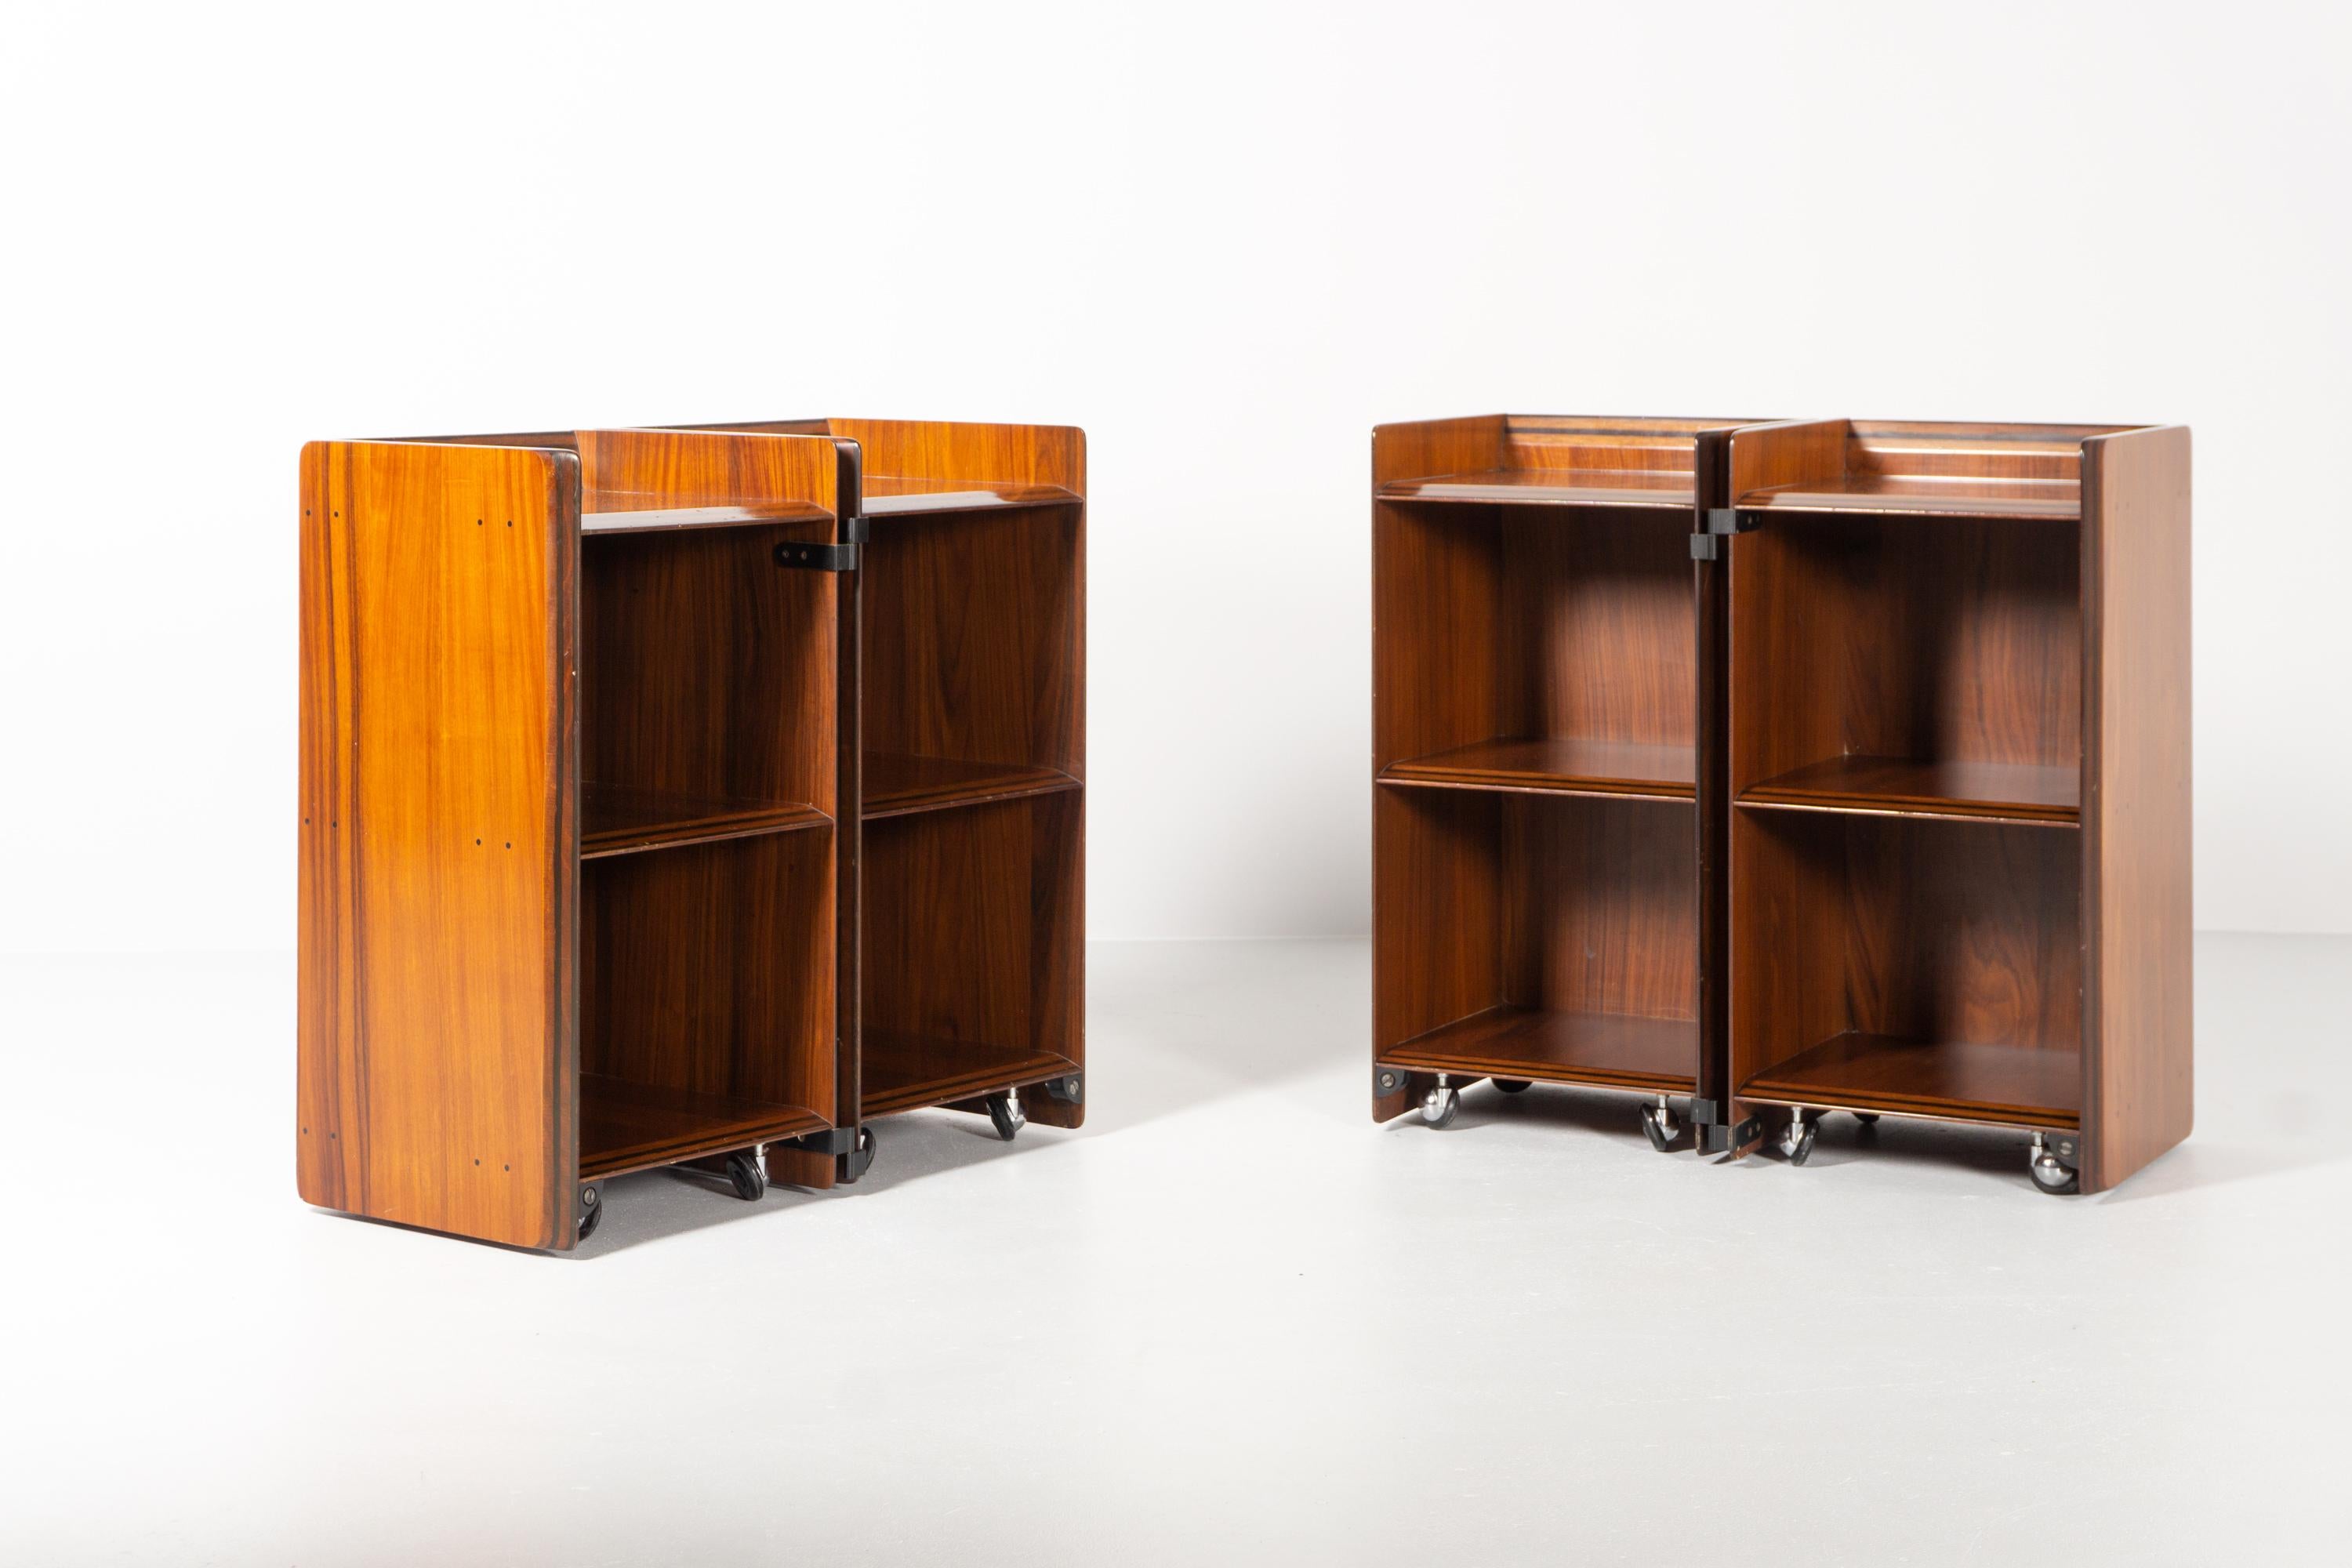 Diese beiden Klappschränke auf Rollen, 1975 von Afra & Tobia Scarpa 1975 entworfen, bestechen durch ihr minimalistisches Design und ihre traditionelle Handwerkskunst. 
Die Stücke sind außergewöhnlich fein und sehr detailliert. 
Tobia und seine